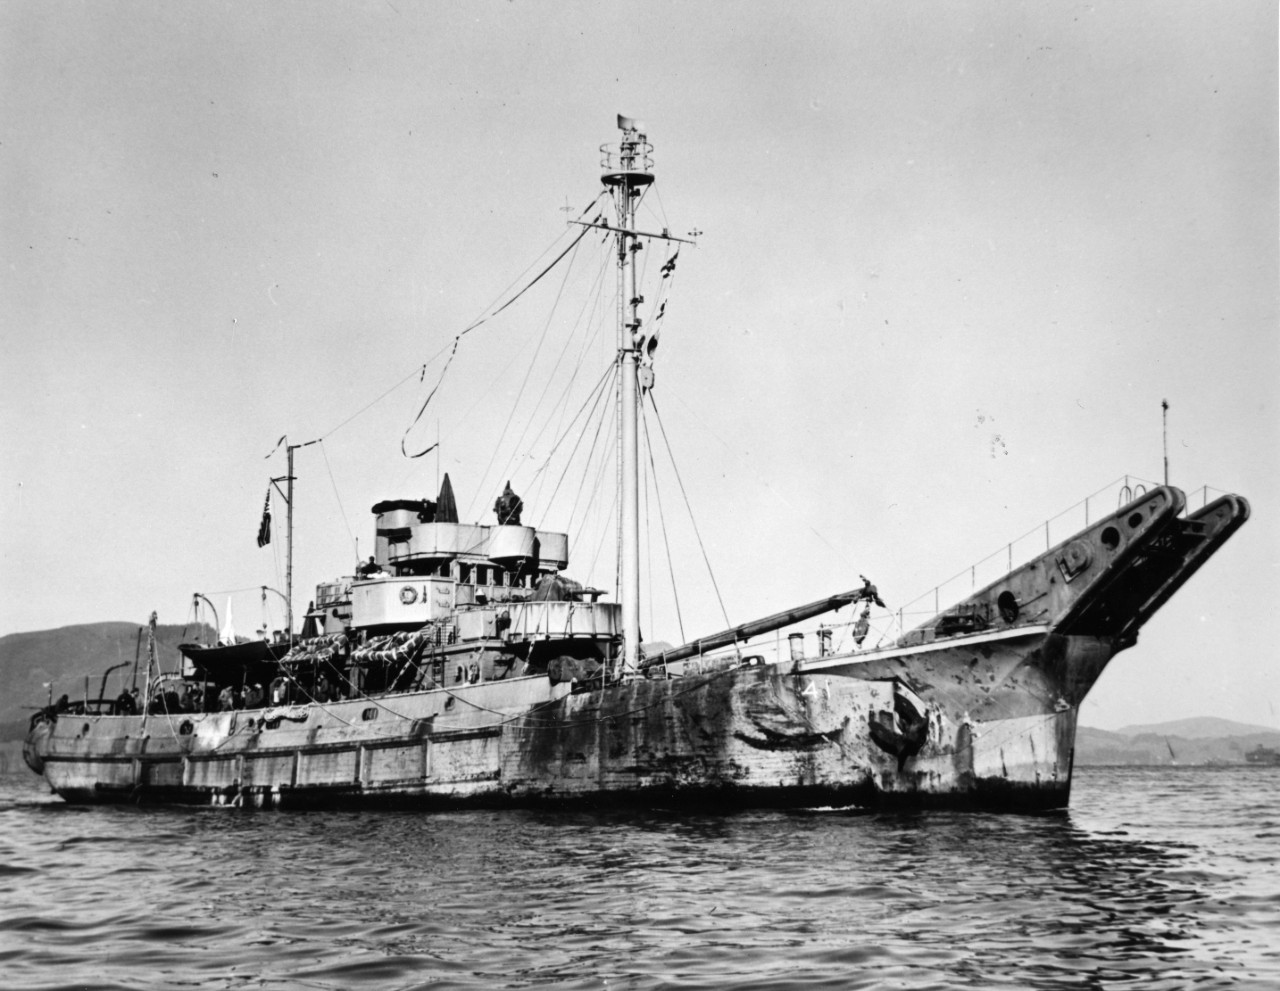 USS Baretta (AN-41)